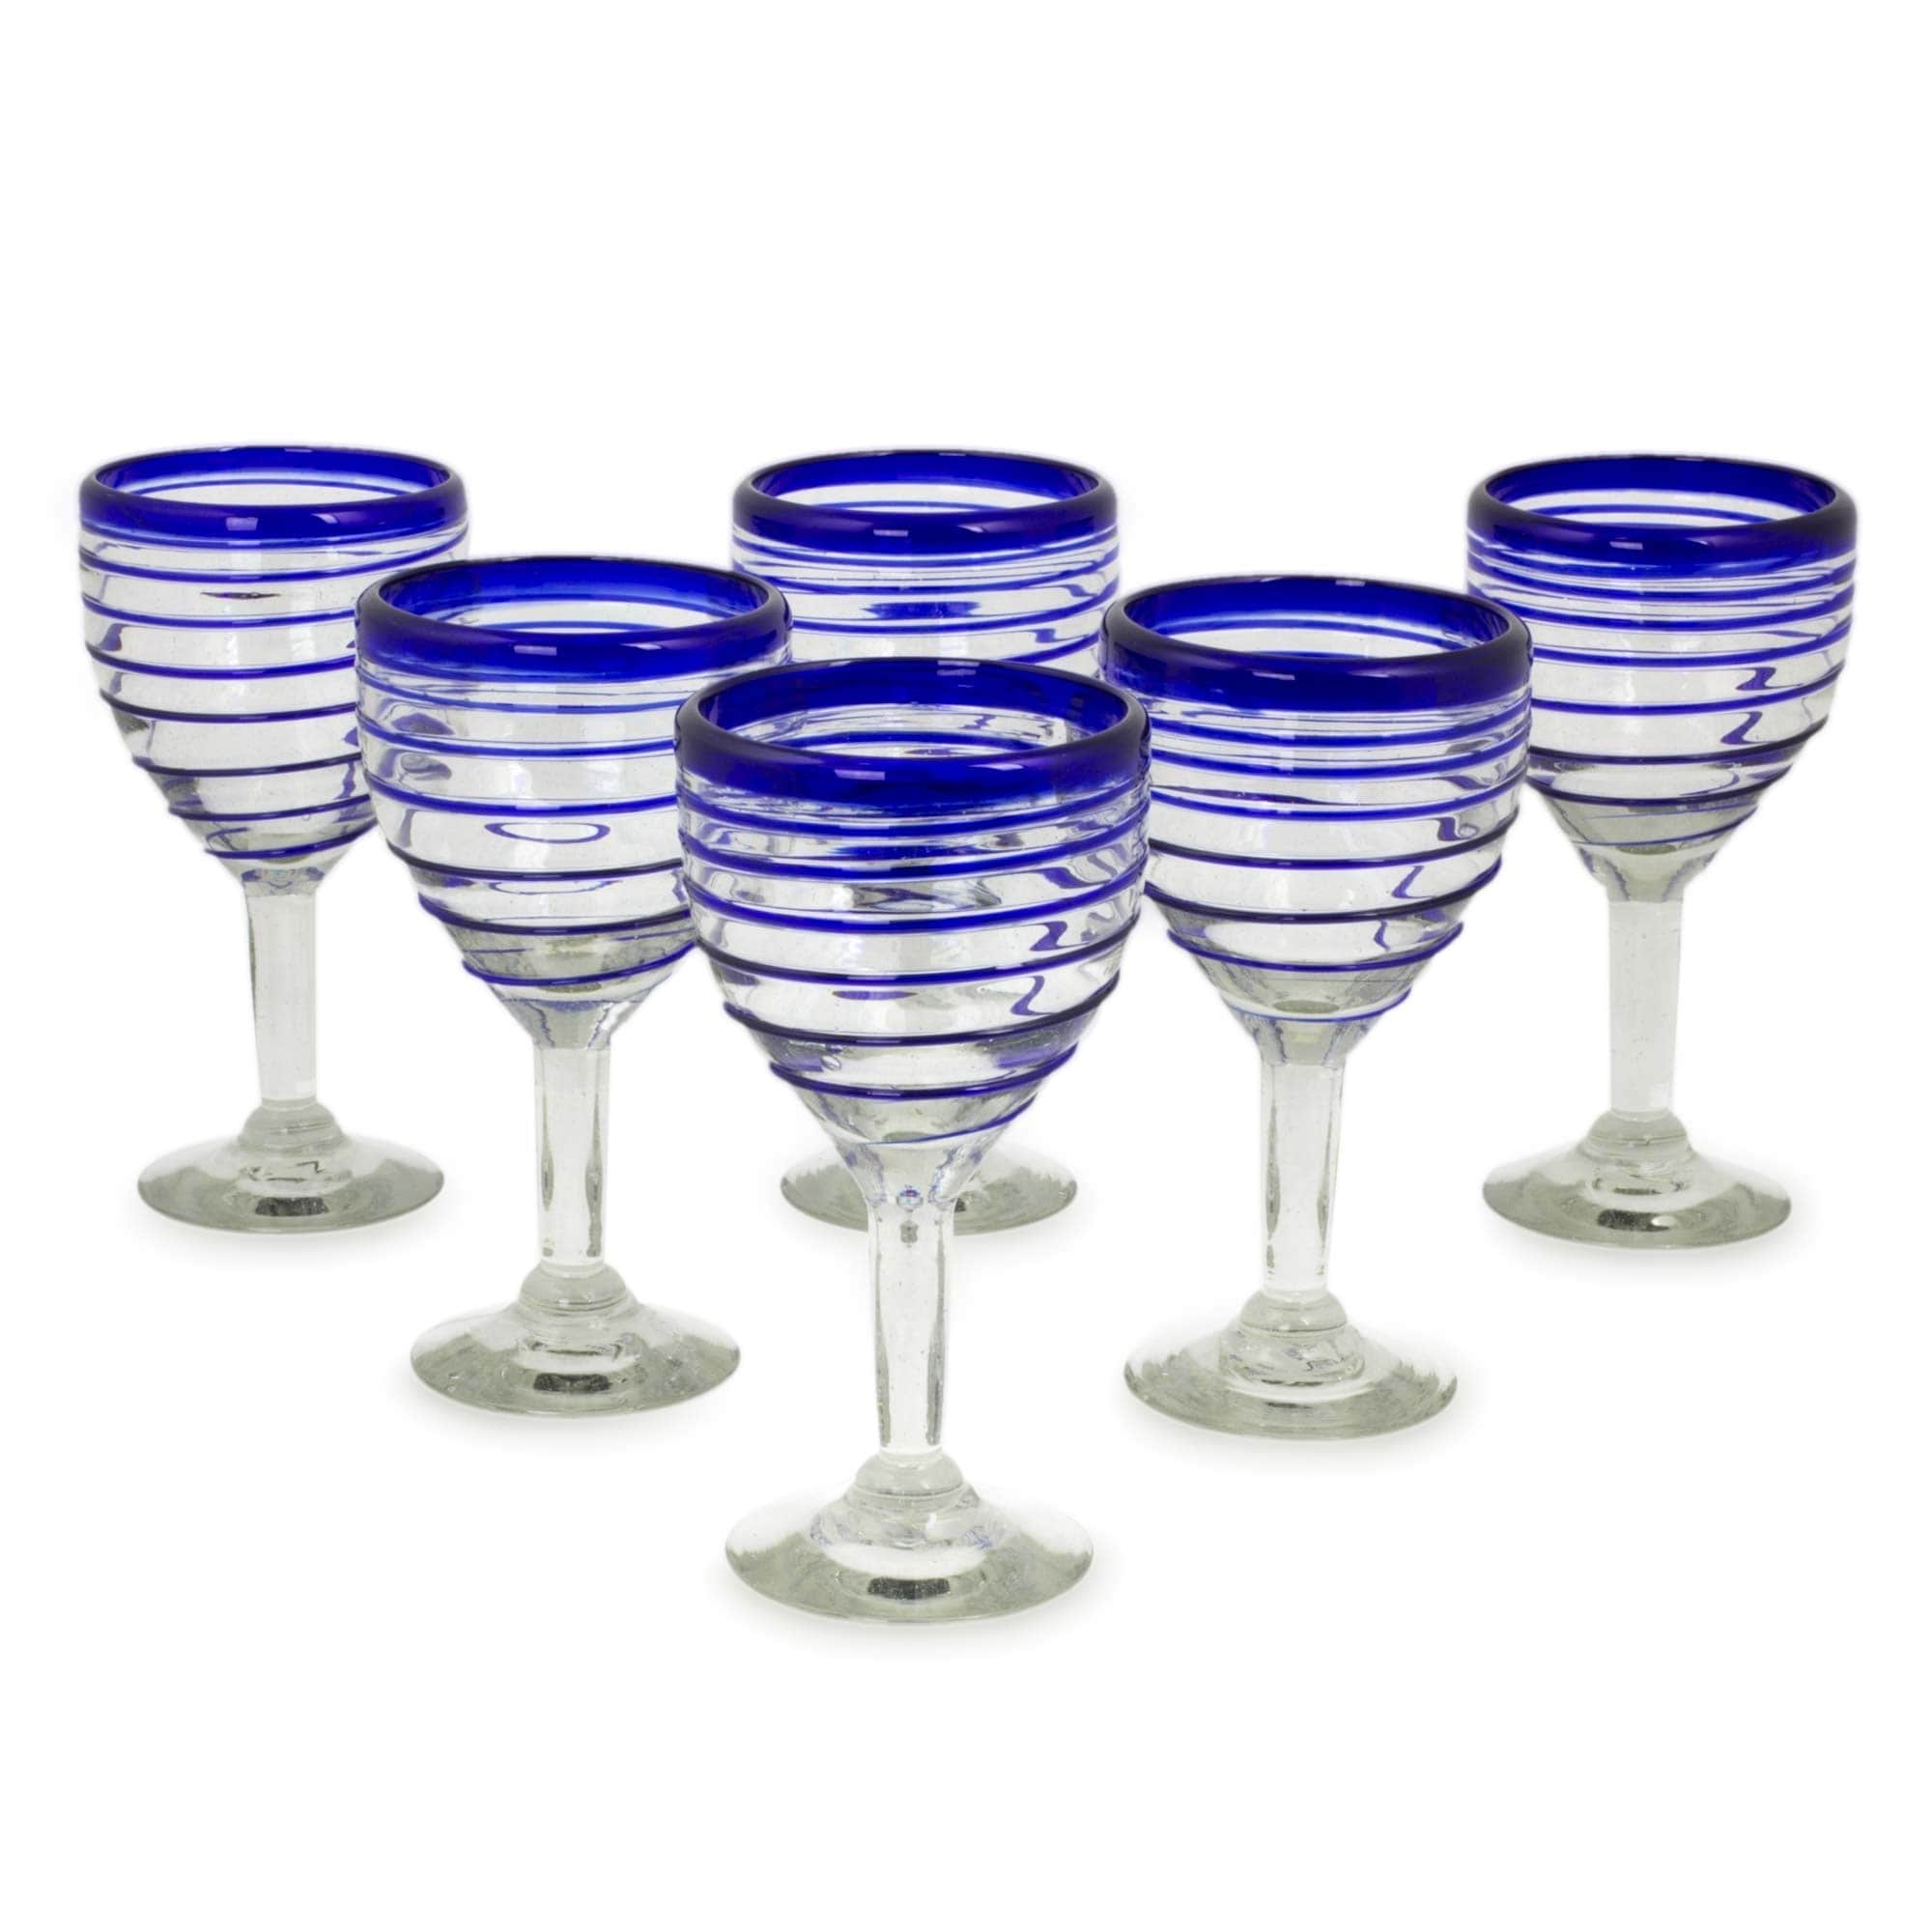 https://ak1.ostkcdn.com/images/products/3067448/Handmade-Wine-glasses-Tall-Cobalt-Spiral-set-of-6-Mexico-5b7c92e9-e68e-4e2d-8158-6be0679fb0f7.jpg